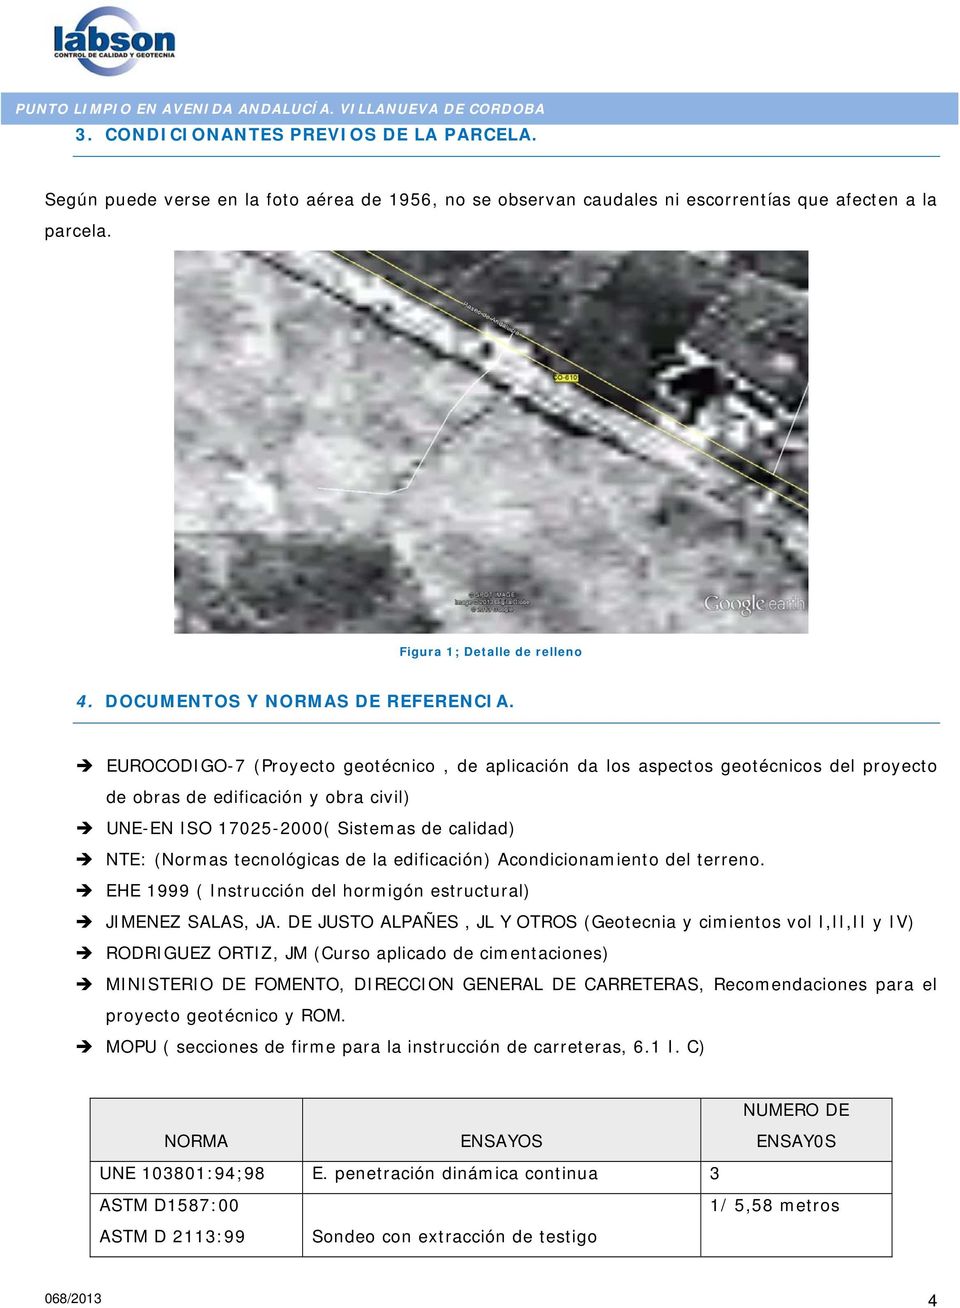 EUROCODIGO-7 (Proyecto geotécnico, de aplicación da los aspectos geotécnicos del proyecto de obras de edificación y obra civil) UNE-EN ISO 17025-2000( Sistemas de calidad) NTE: (Normas tecnológicas